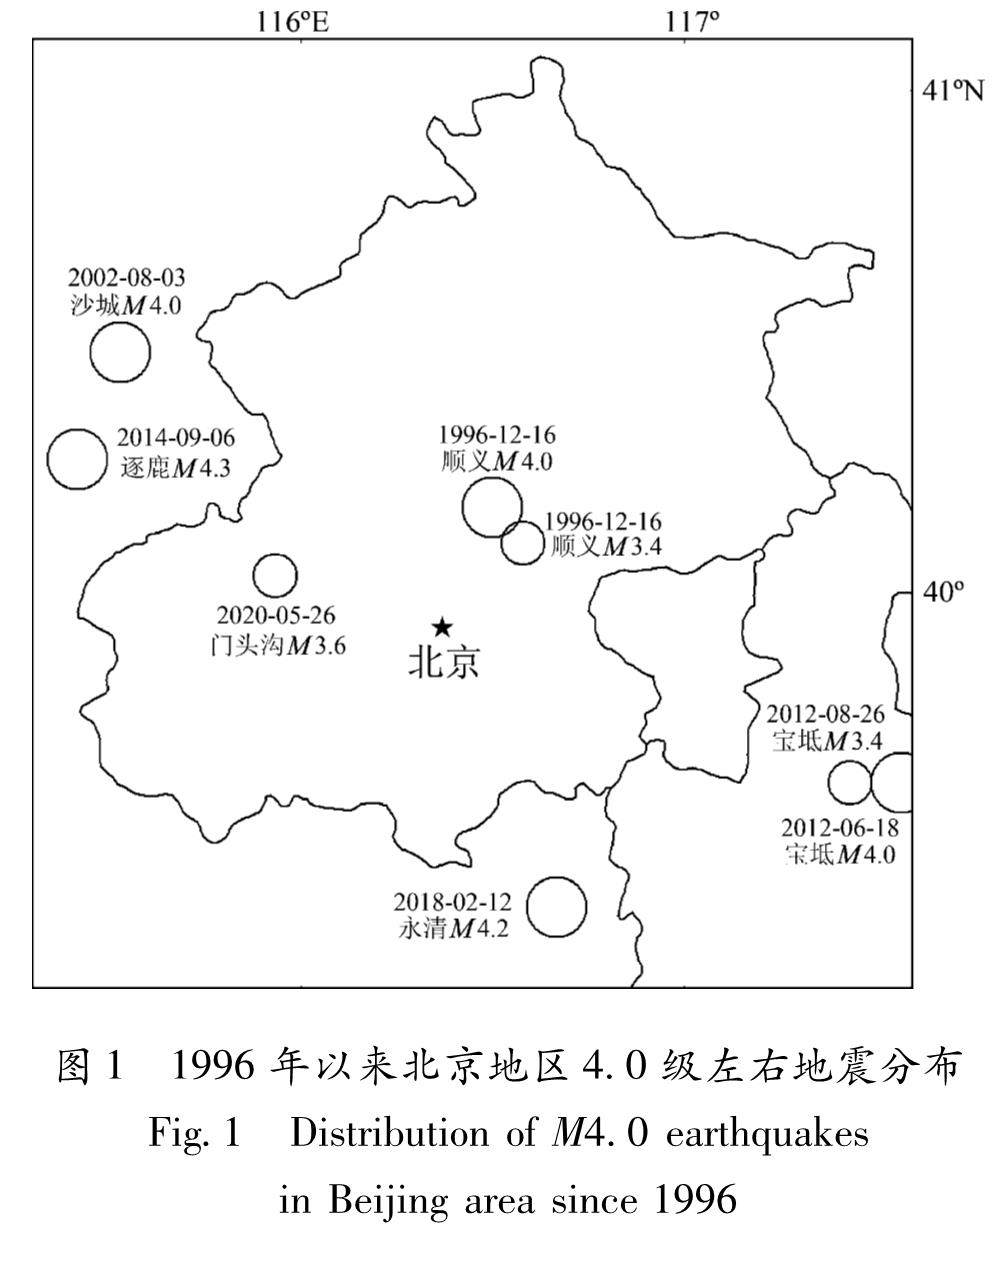 图1 1996年以来北京地区4.0级左右地震分布<br/>Fig.1 Distribution of M4.0 earthquakes in Beijing area since 1996